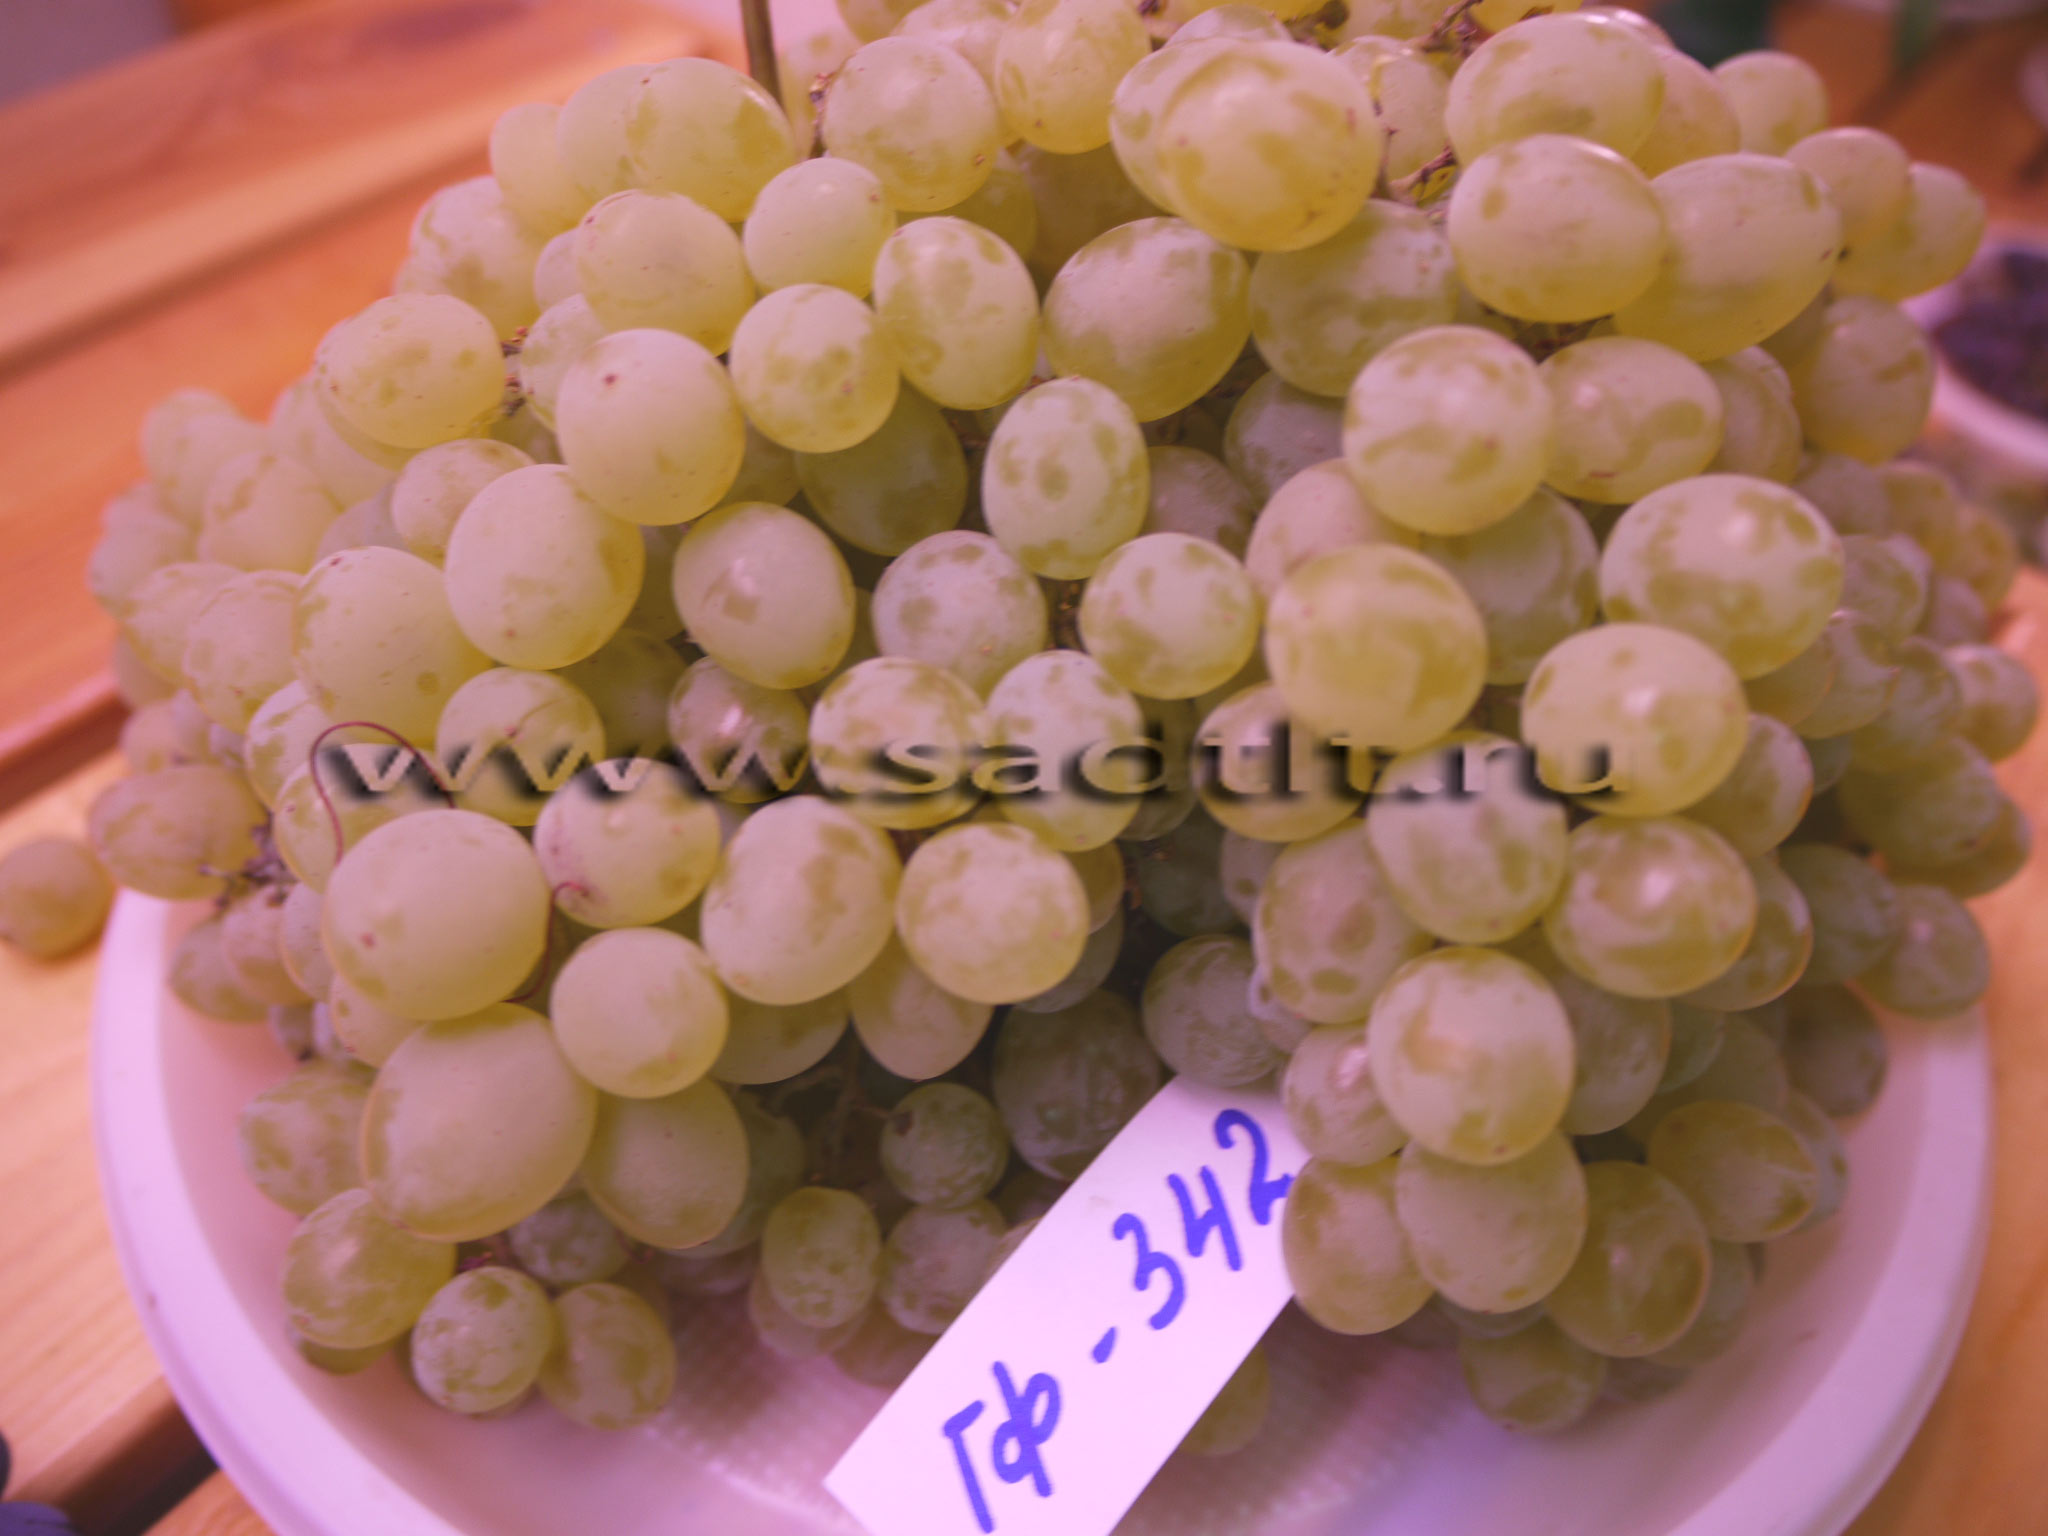 Сорт винограда Гибрид 342, купить виноград, саженцы винограда, тольятти